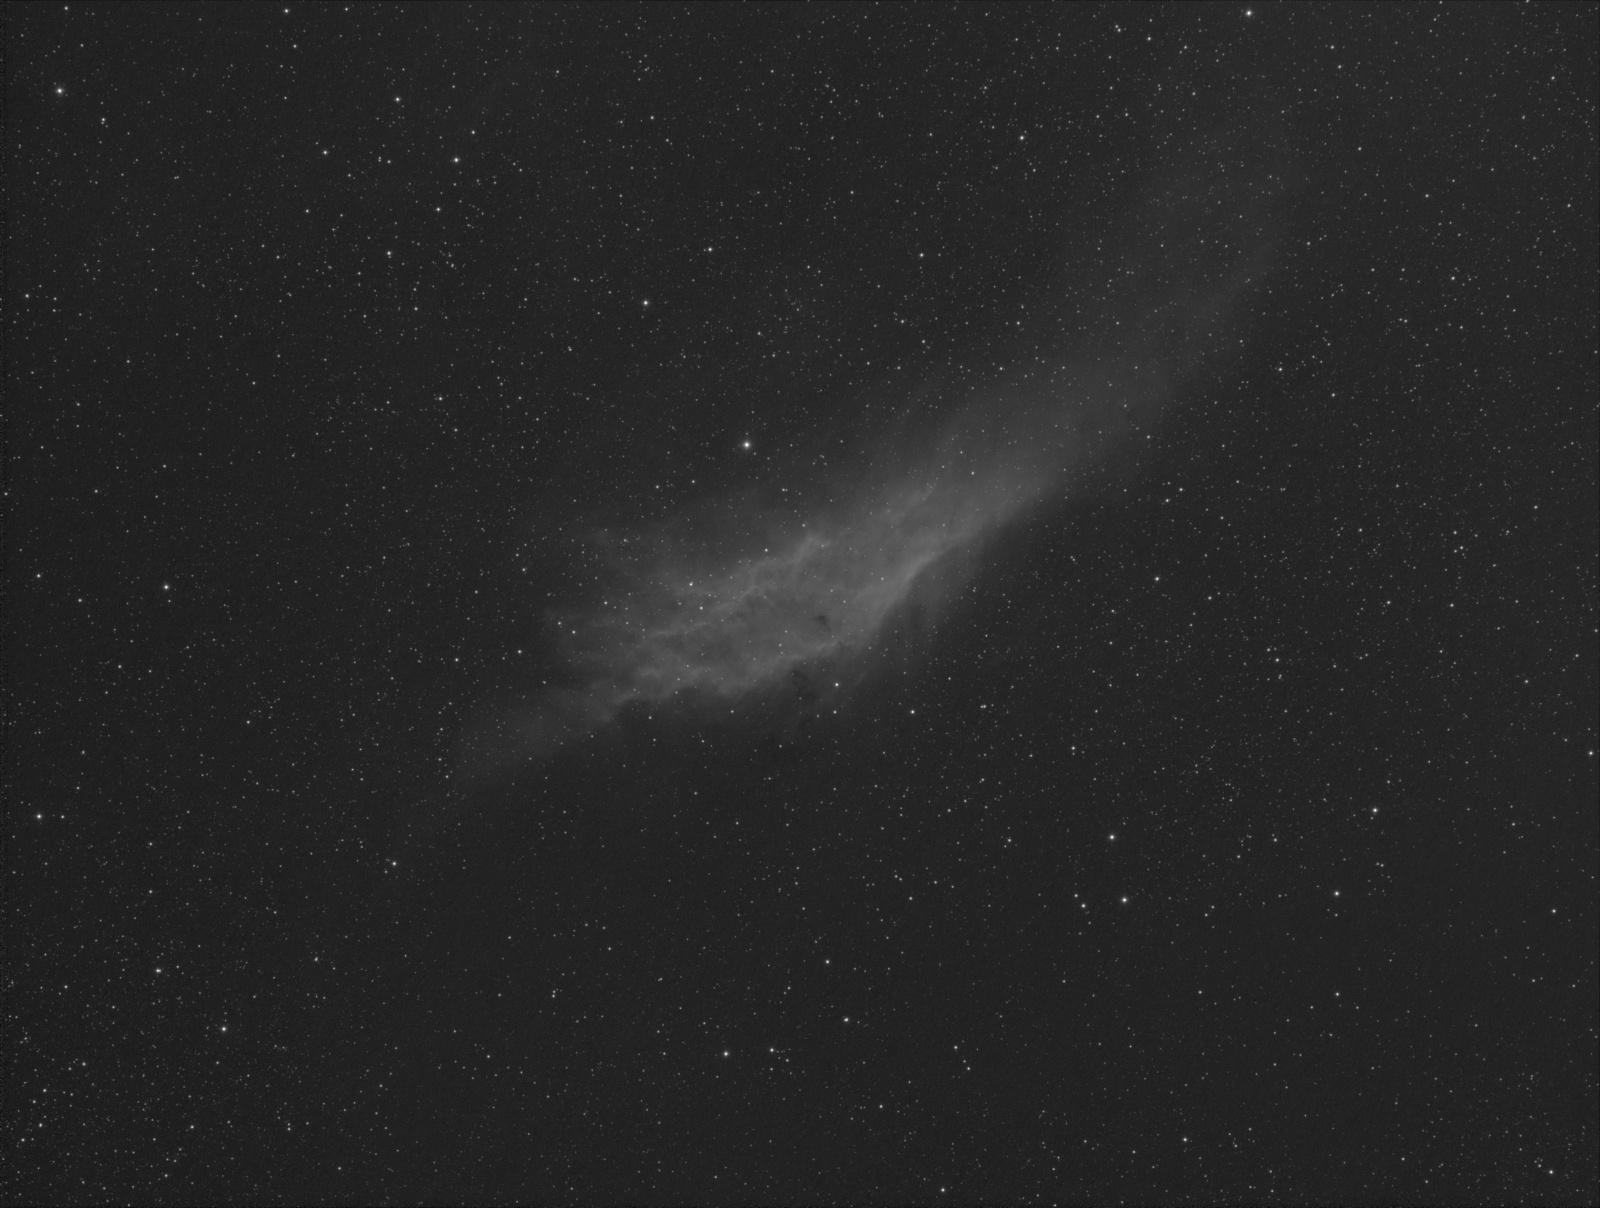 NGC1499_20x600s_Ha_Samyang135-5,6_-20st_Atik383.jpg